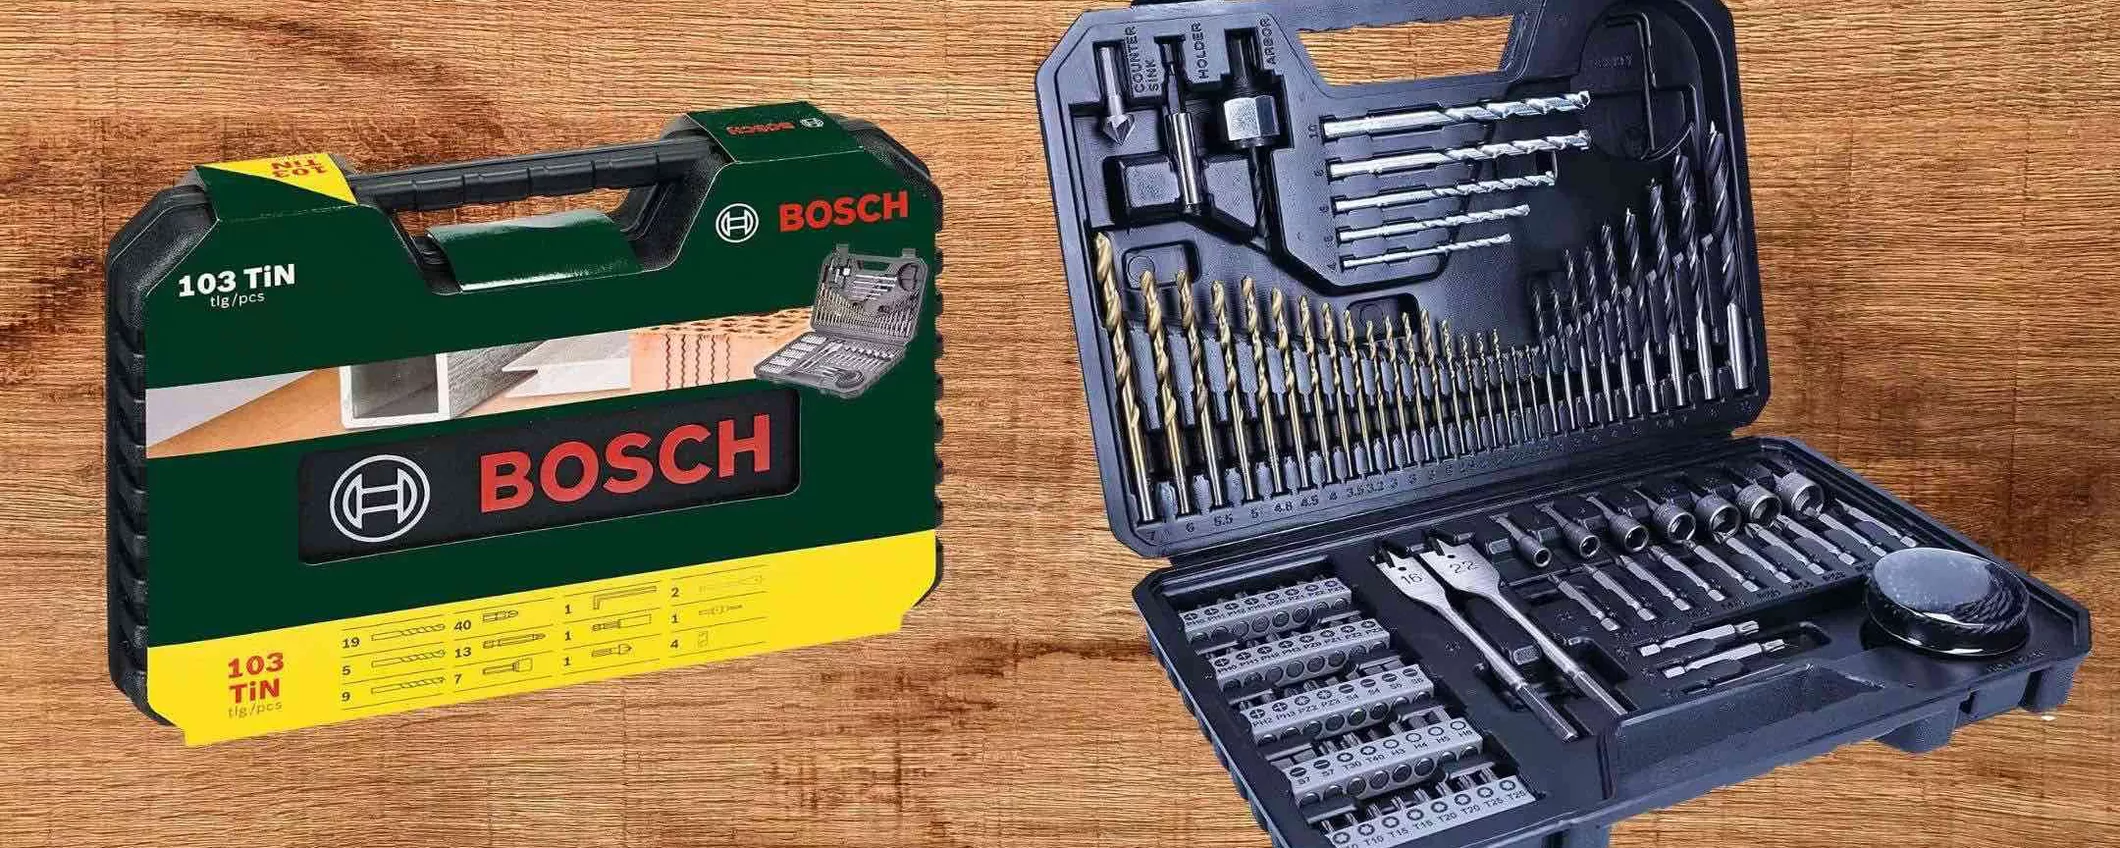 Bosch: il SUPREMO kit 103 in 1 torna a 24€ su Amazon, occasione SHOCK